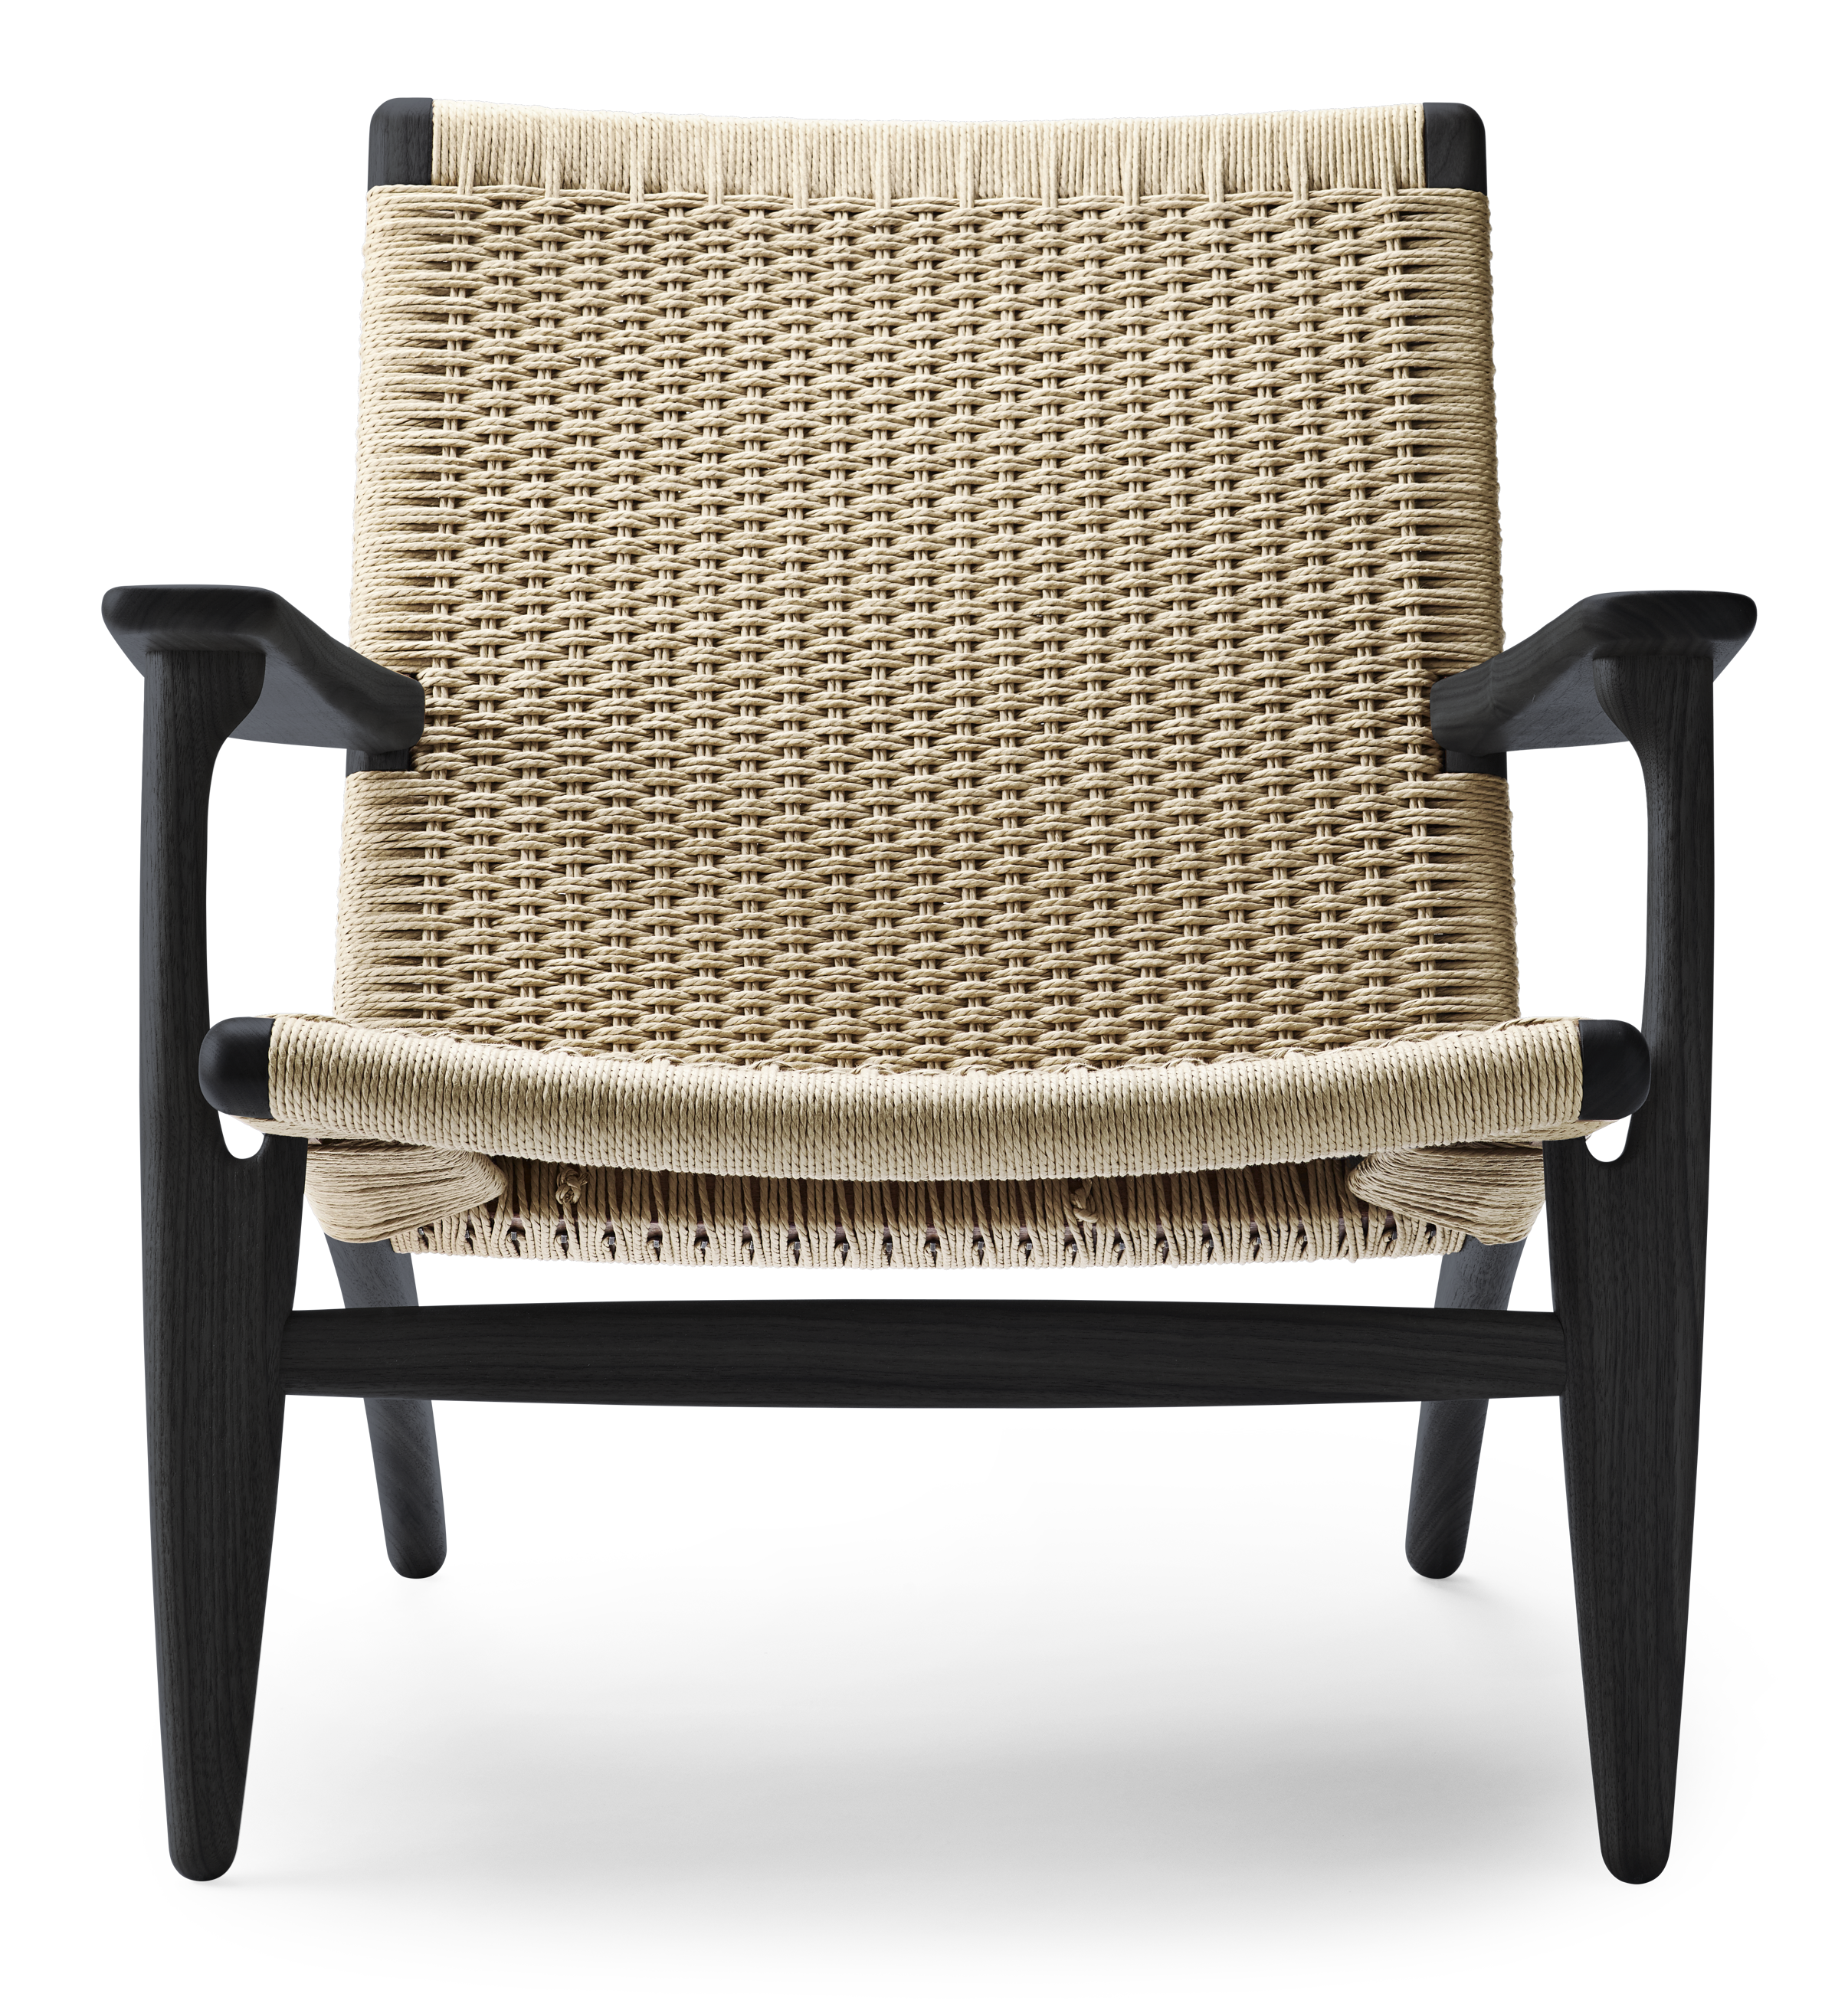 Ch25 Lounge Chair By Hans J Wegner, Seagrass Arm Chair